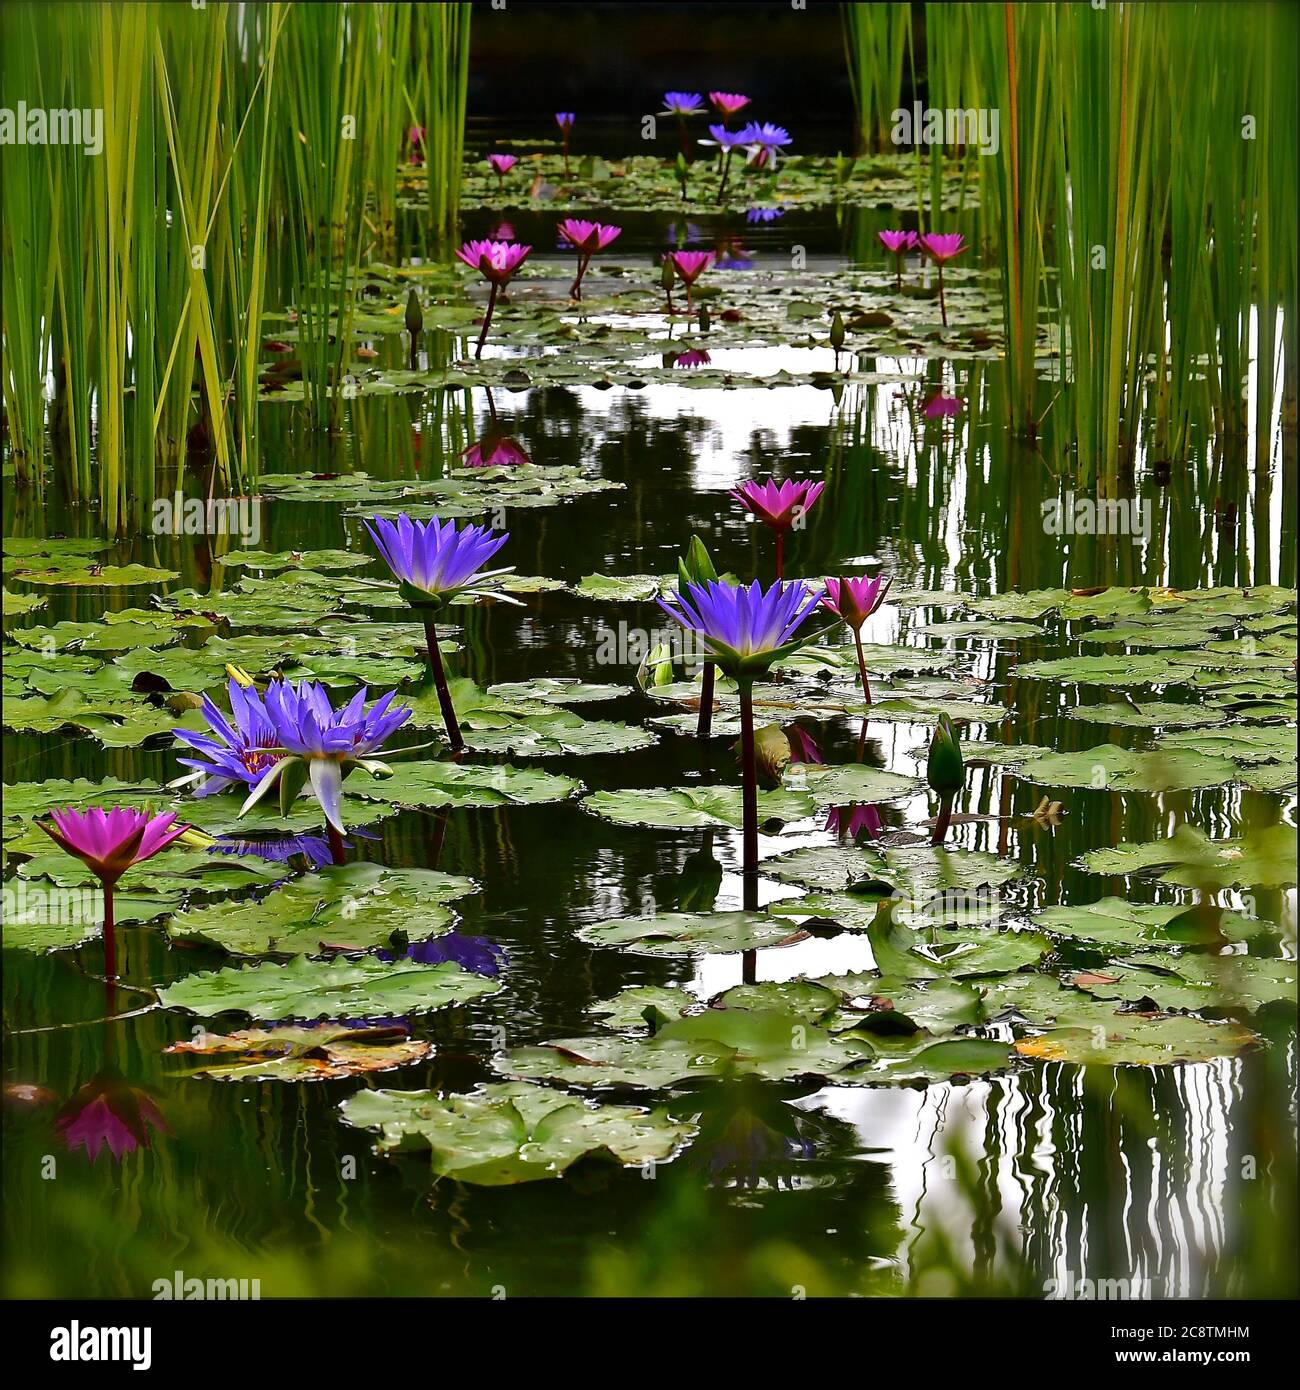 Une vue en perspective d'un étang de nénuphars avec des fleurs de lotus pourpres et roses rappelant une peinture d'aquarelle de Monet. Banque D'Images